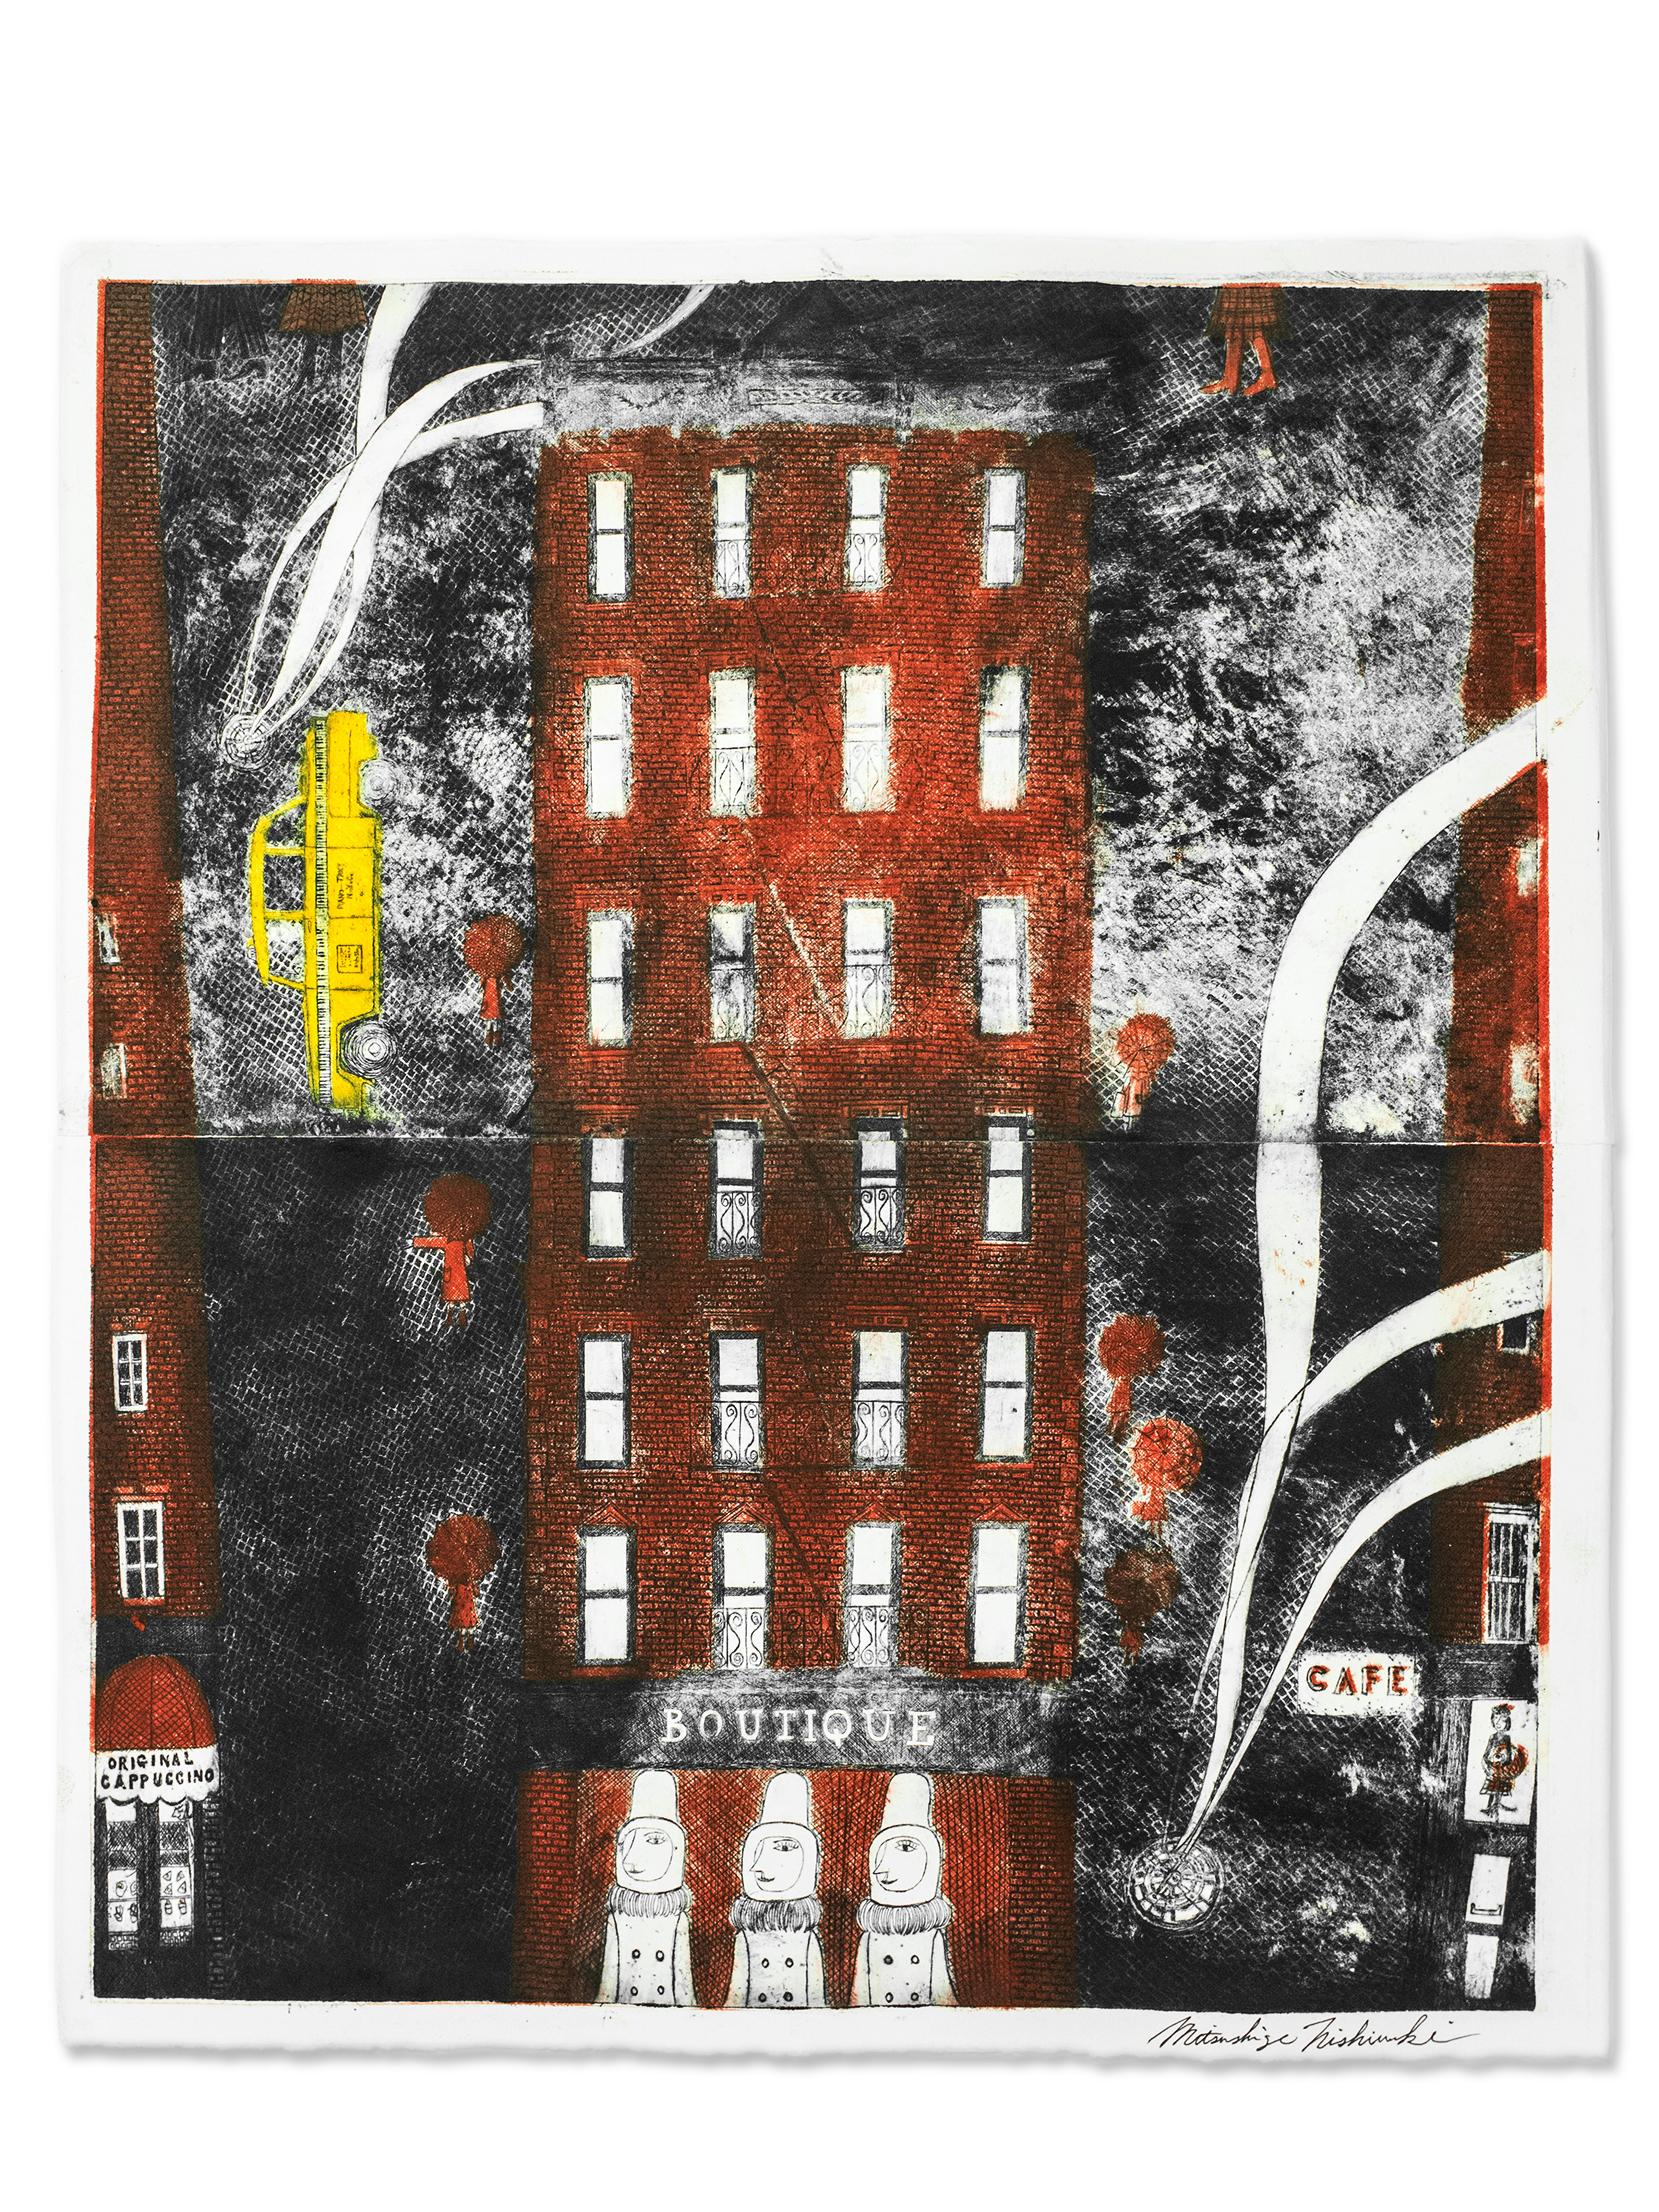 Boutique, Unique intaglio on watercolor paper, cityscape w/ taxicab, red & black